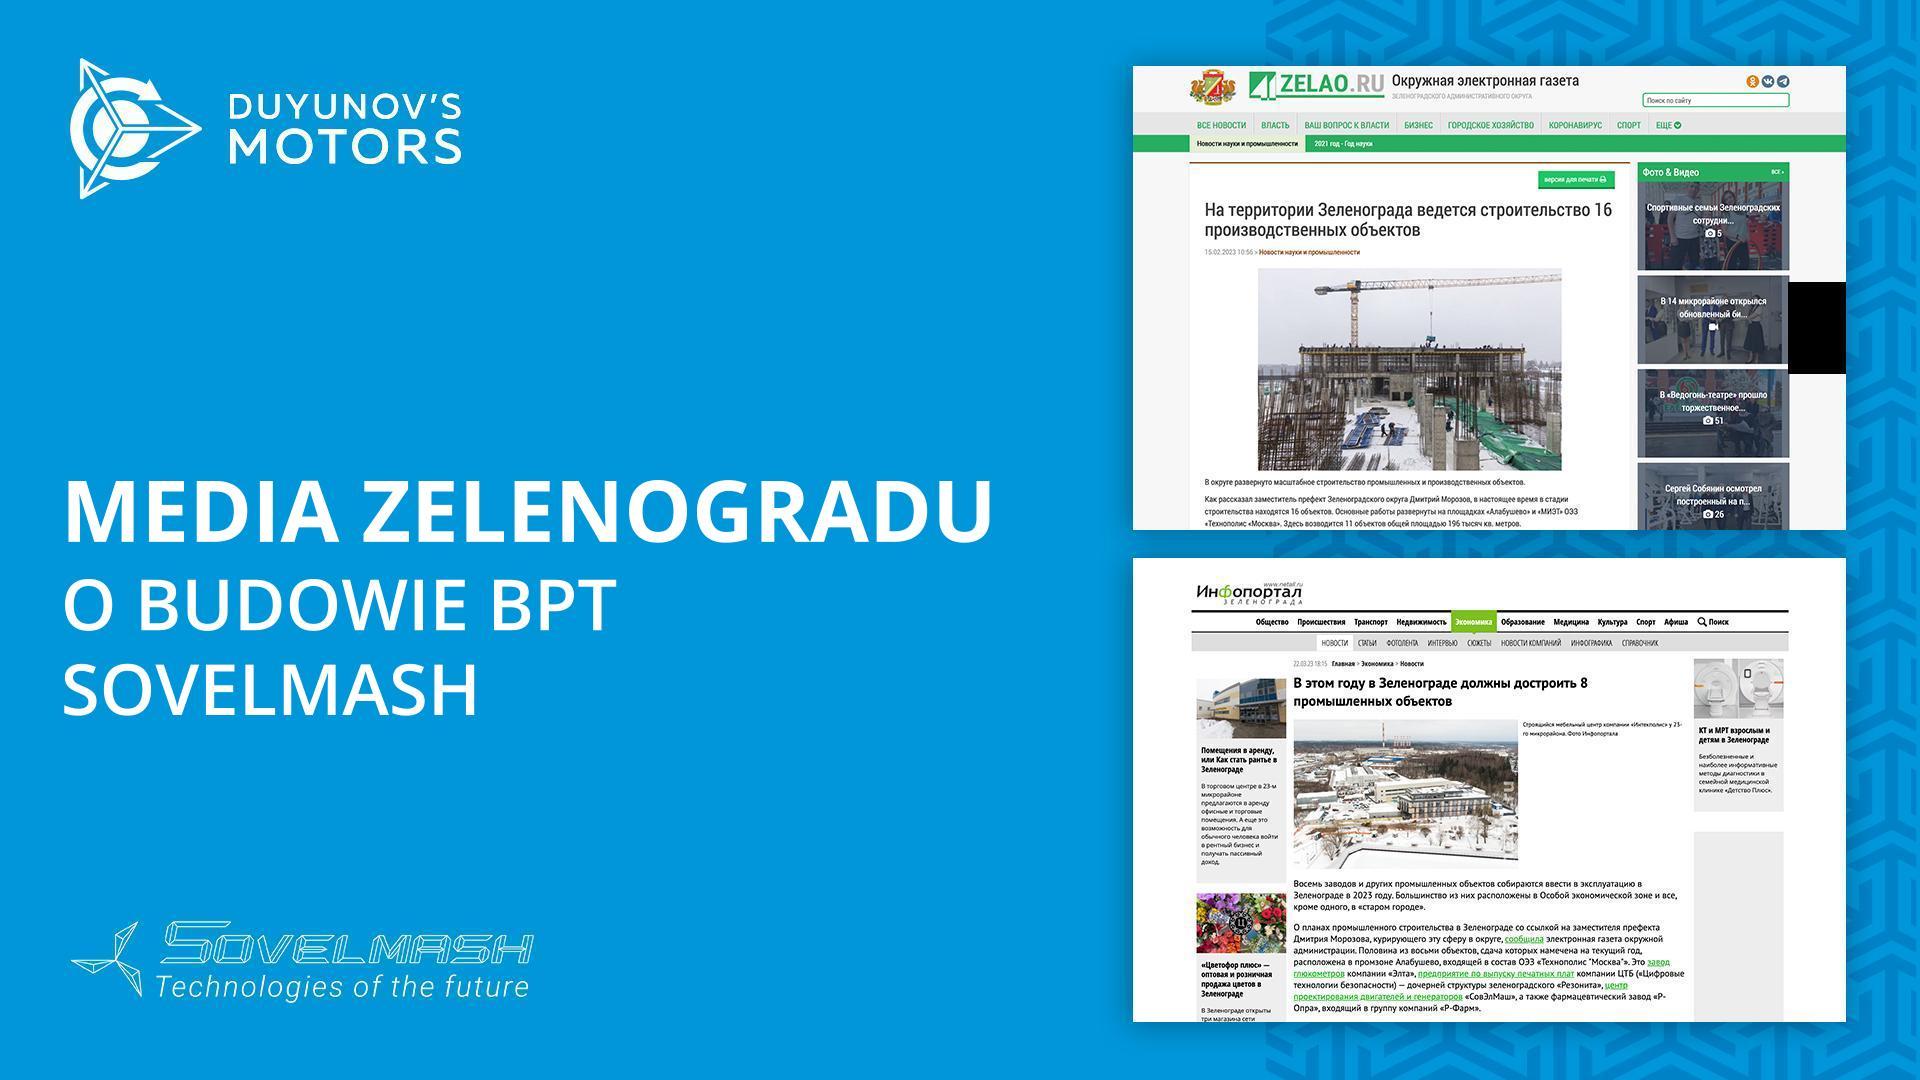 Media Zelenogradu o budowie BPT Sovelmash